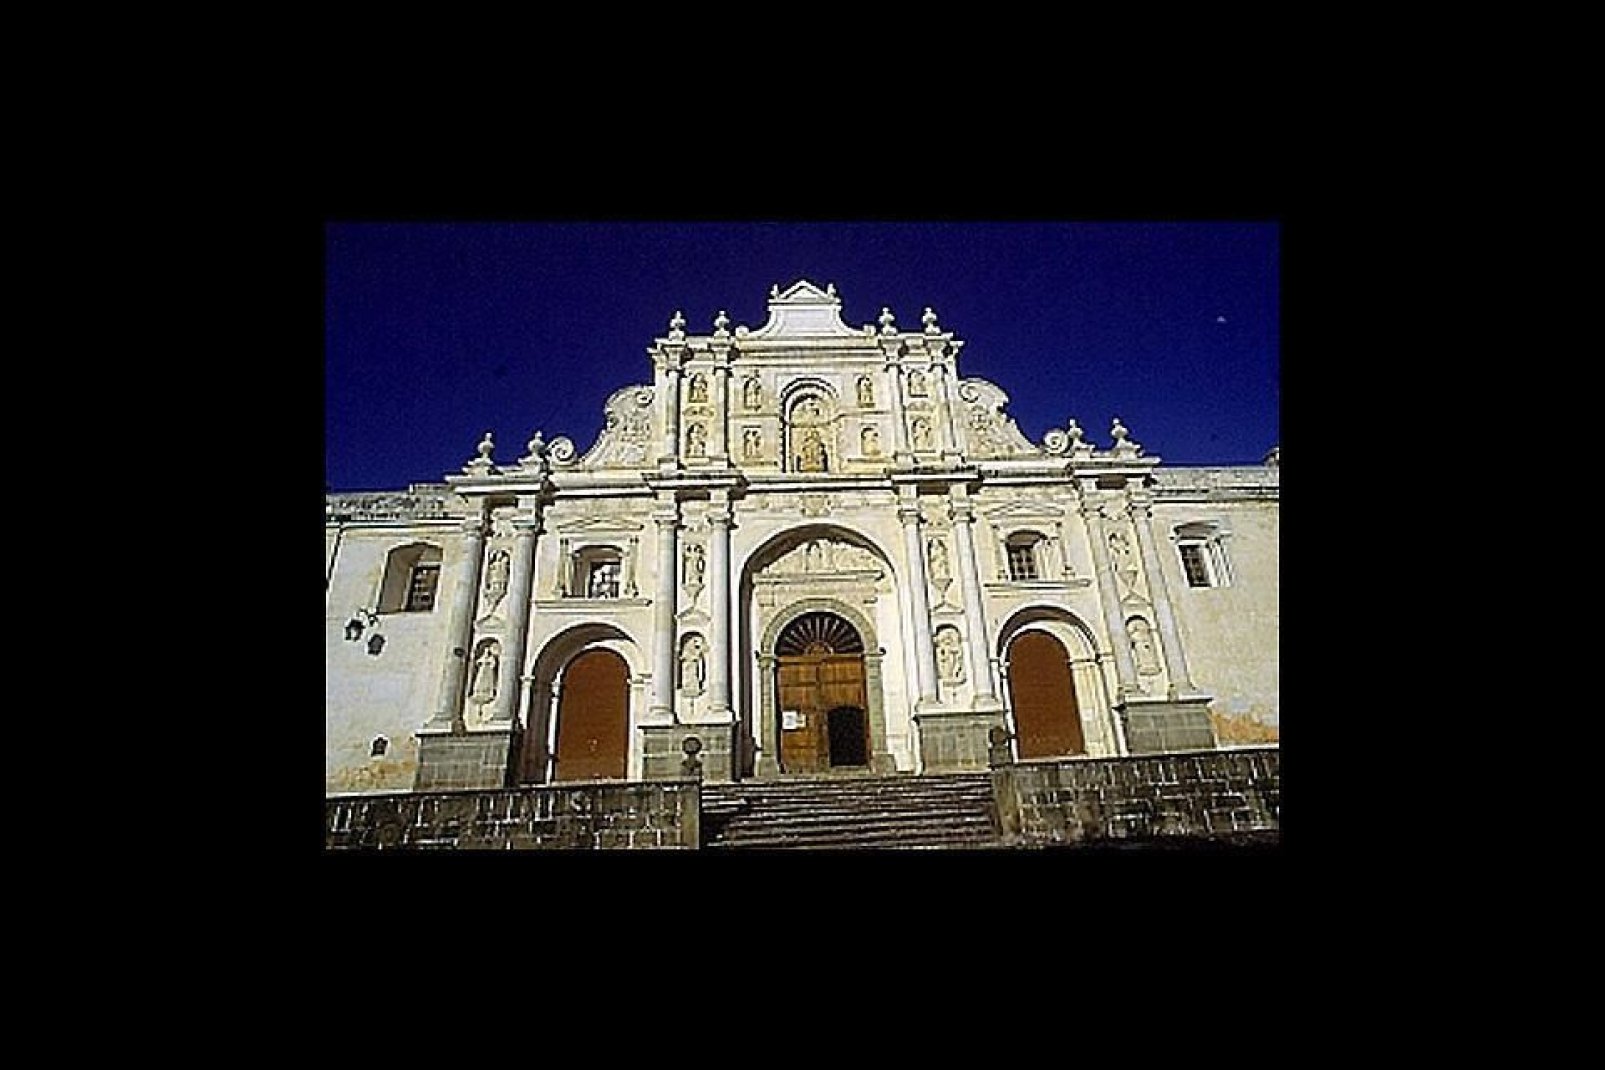 Antigua es famosa por el barroquismo de su arquitectura colonial.